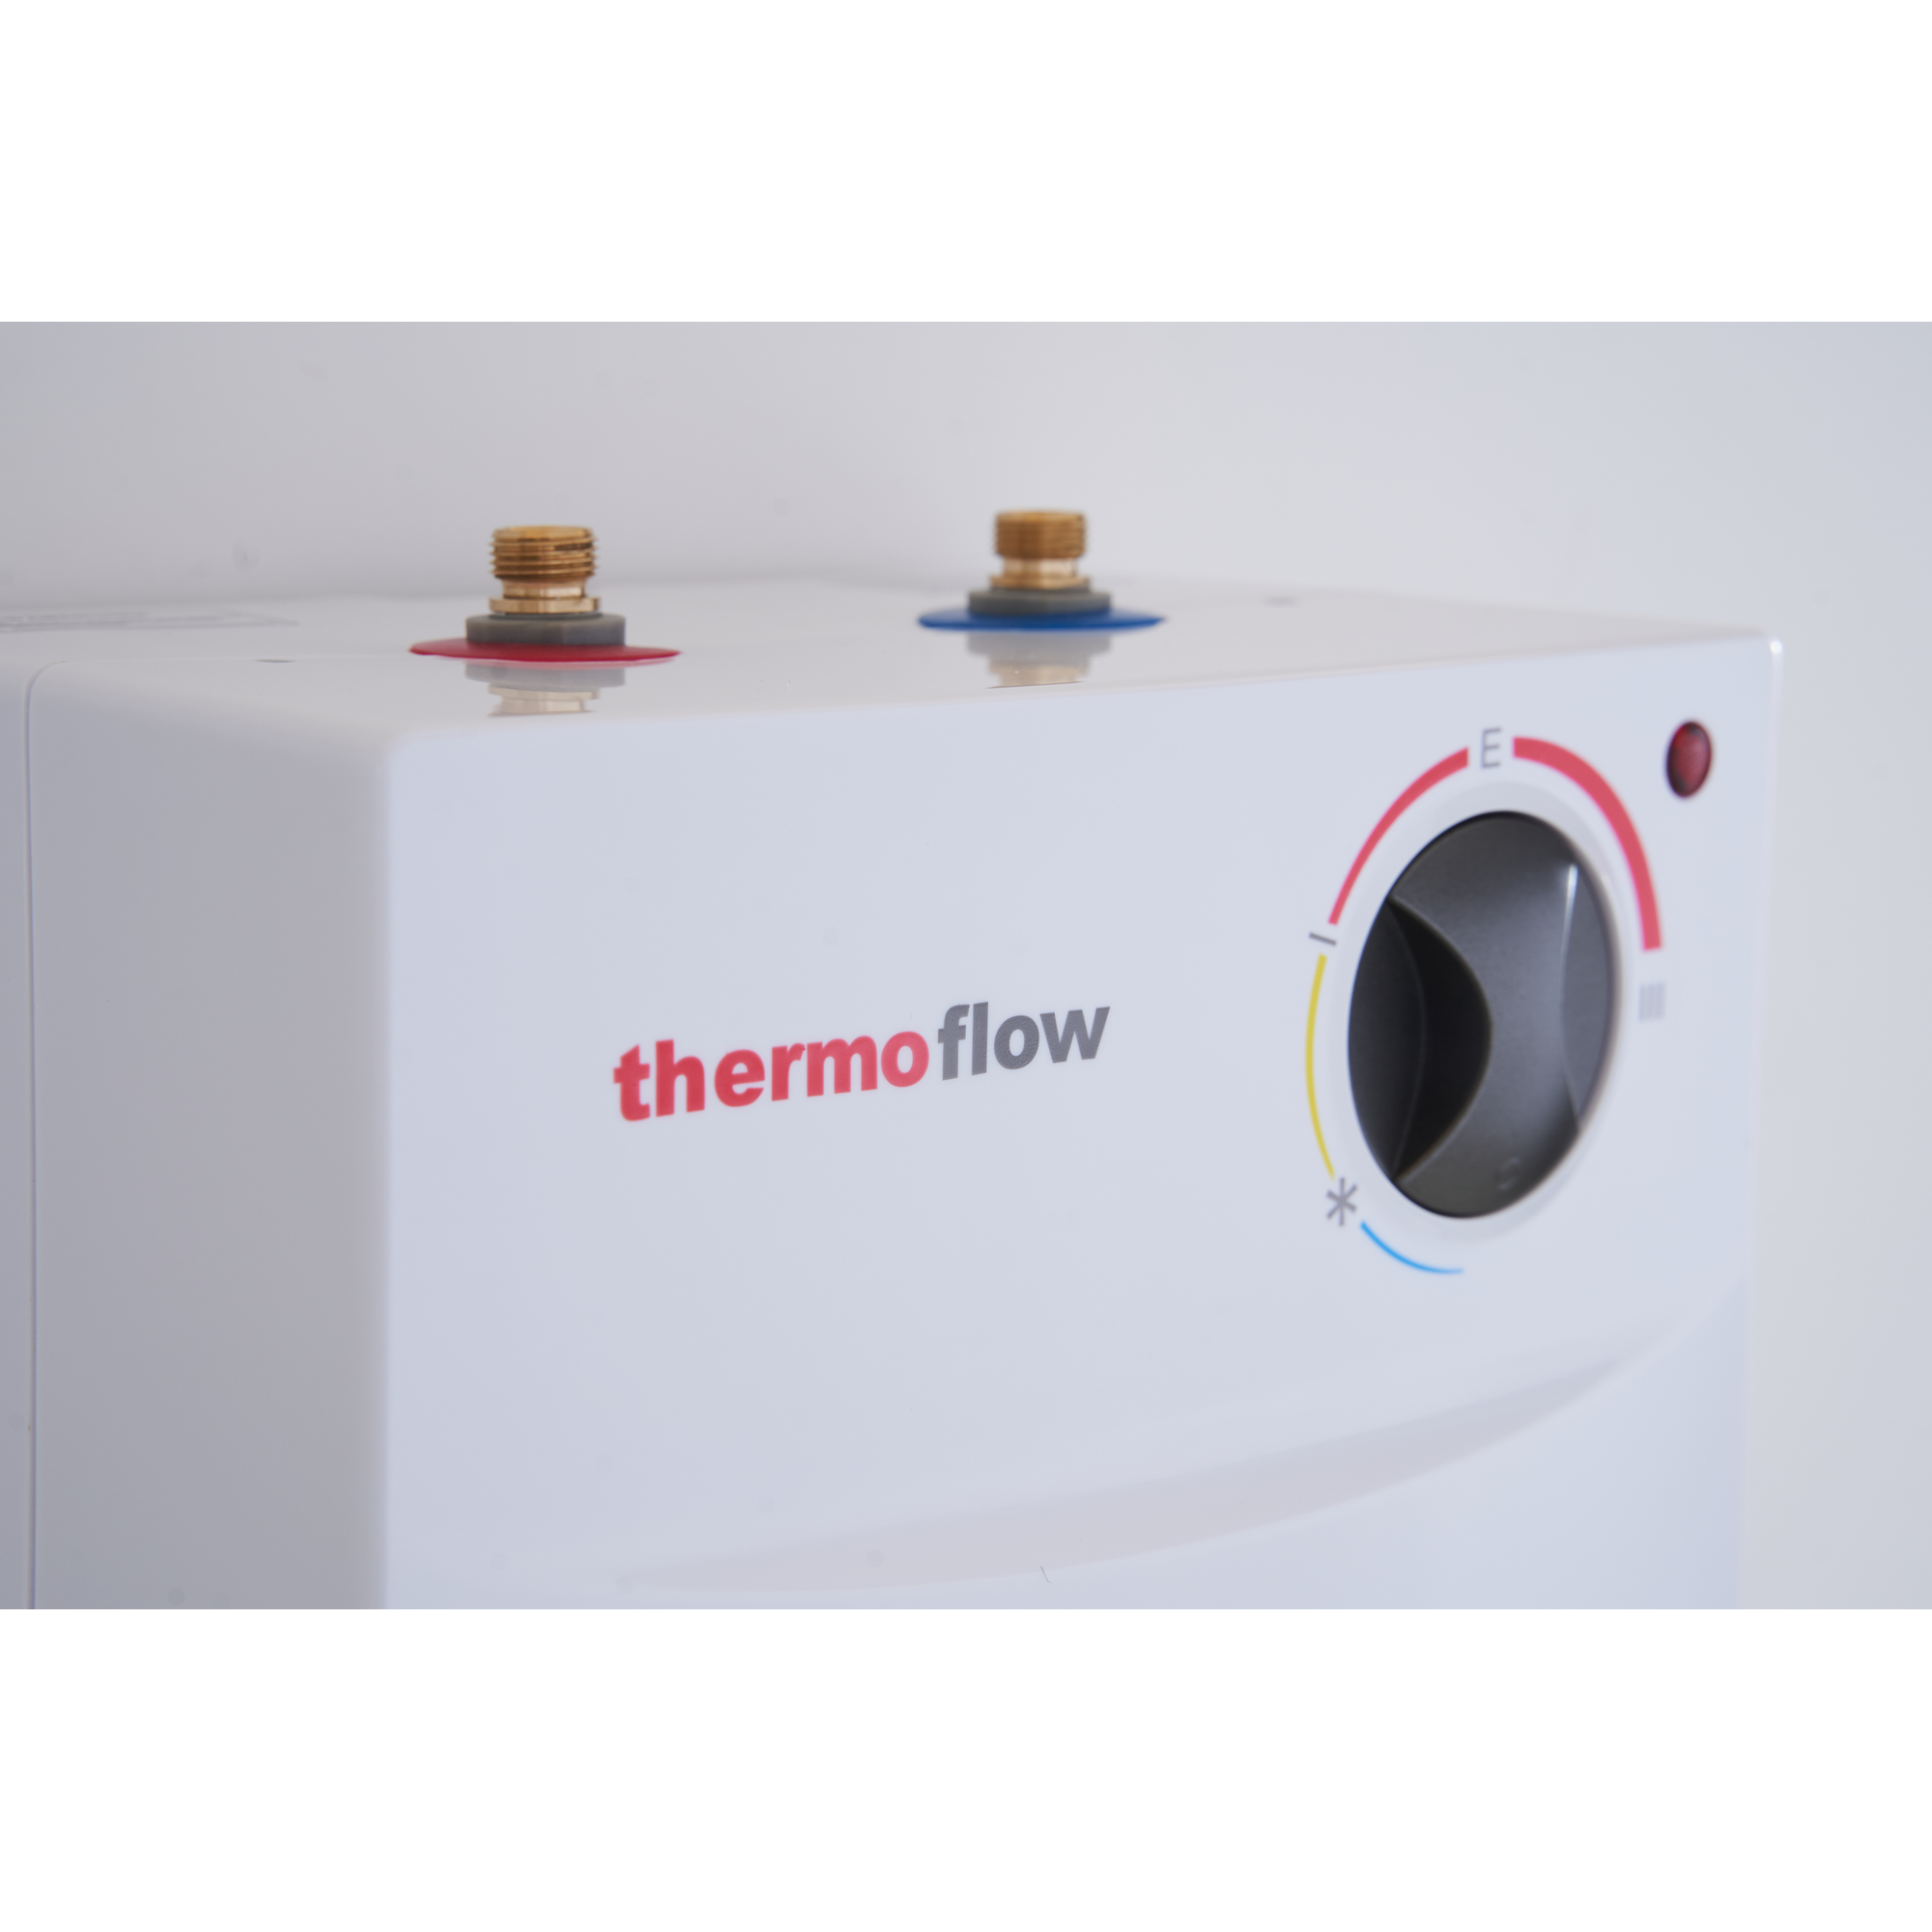 Untertischspeicher mit Armatur 'Thermoflow UT 5 N' 2 kW + product picture